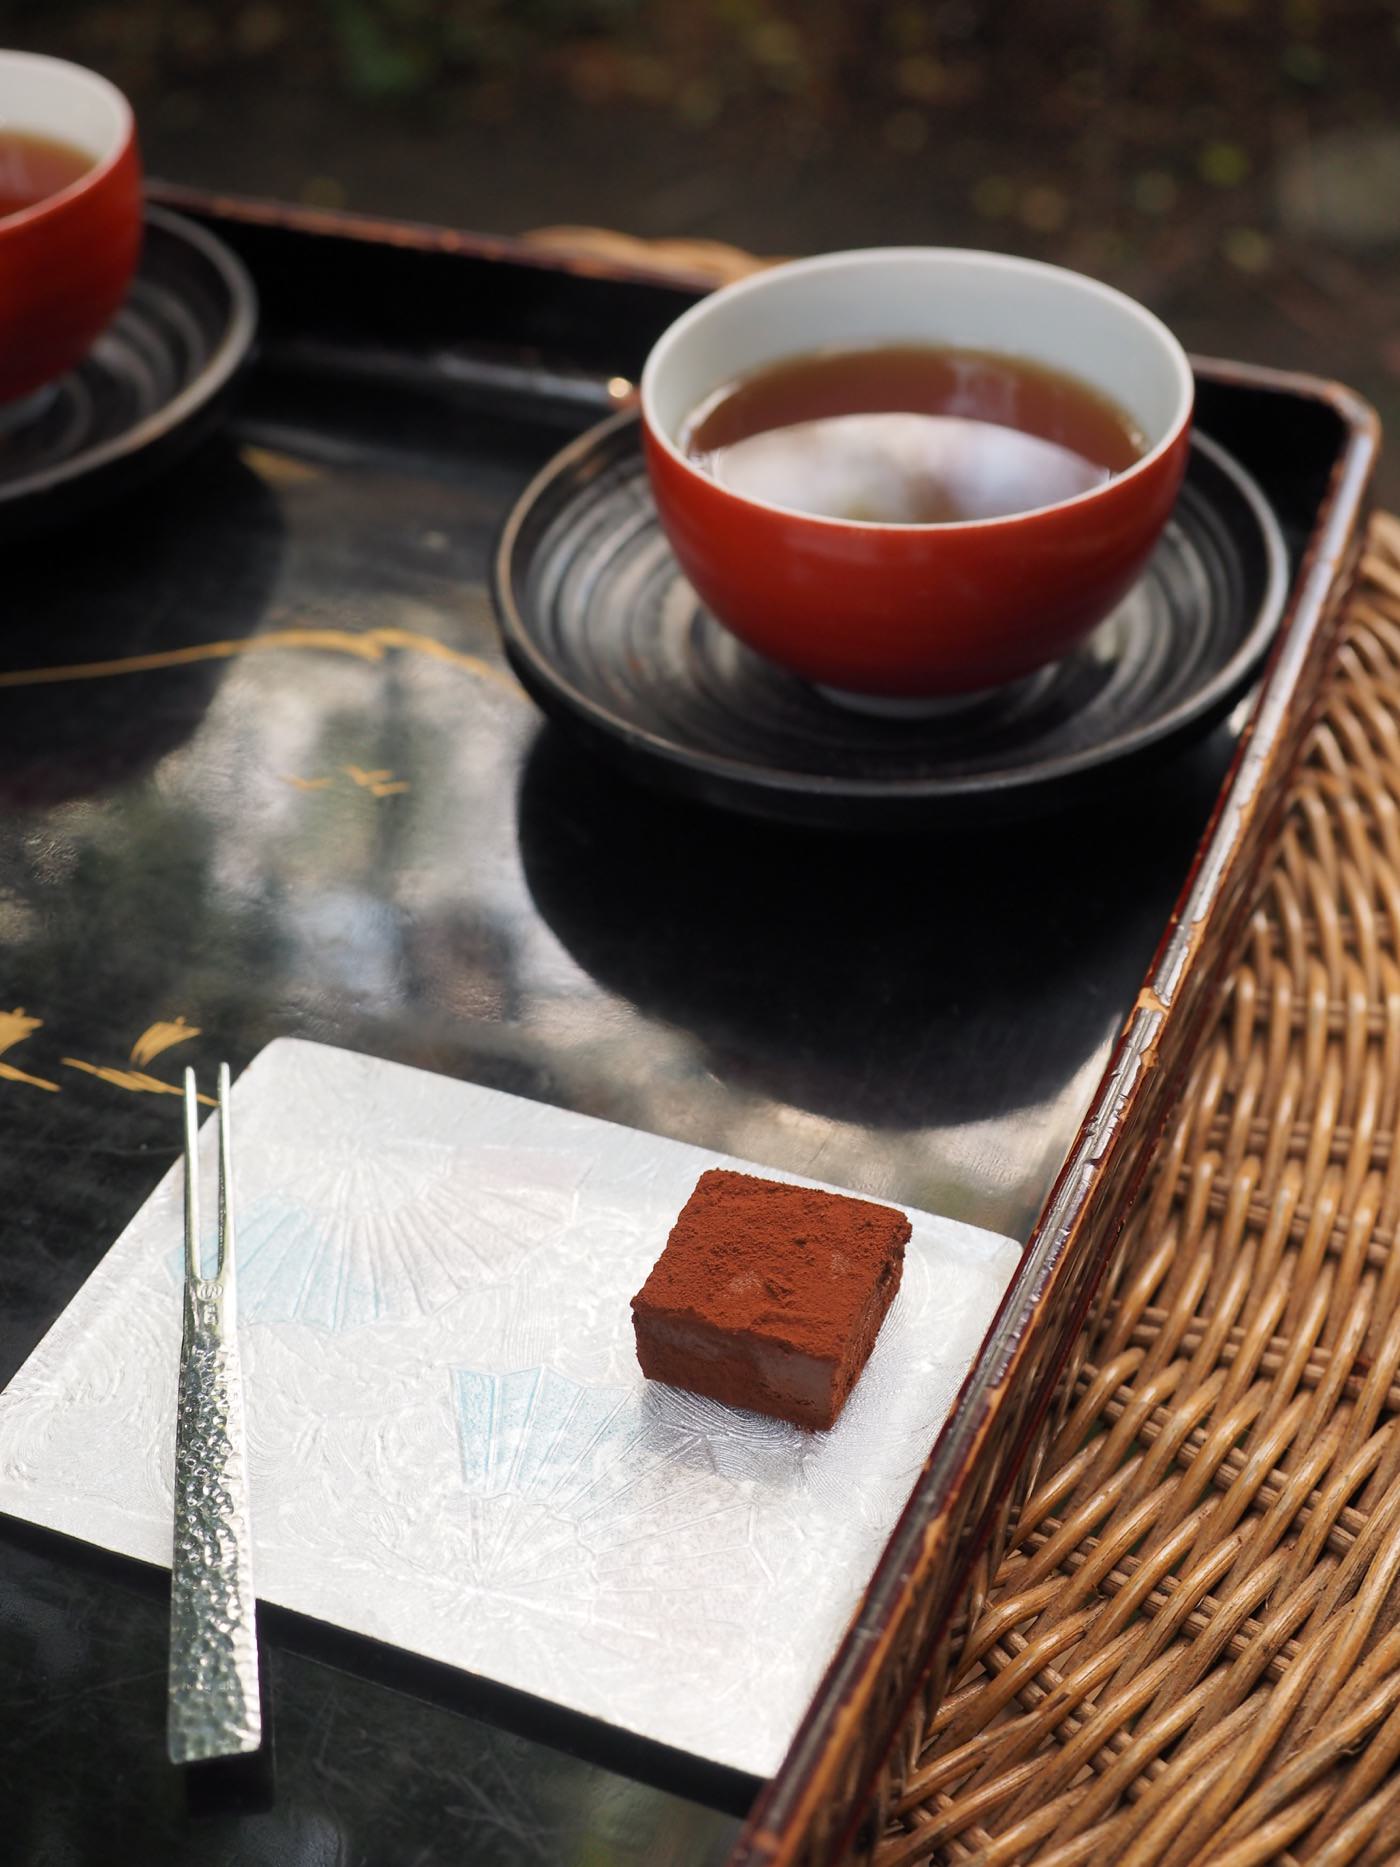 京都美食 生巧克力專賣店 Kyoto 生 Chocolat Organic Tea House - 一口冒險 Bitesized Adventure